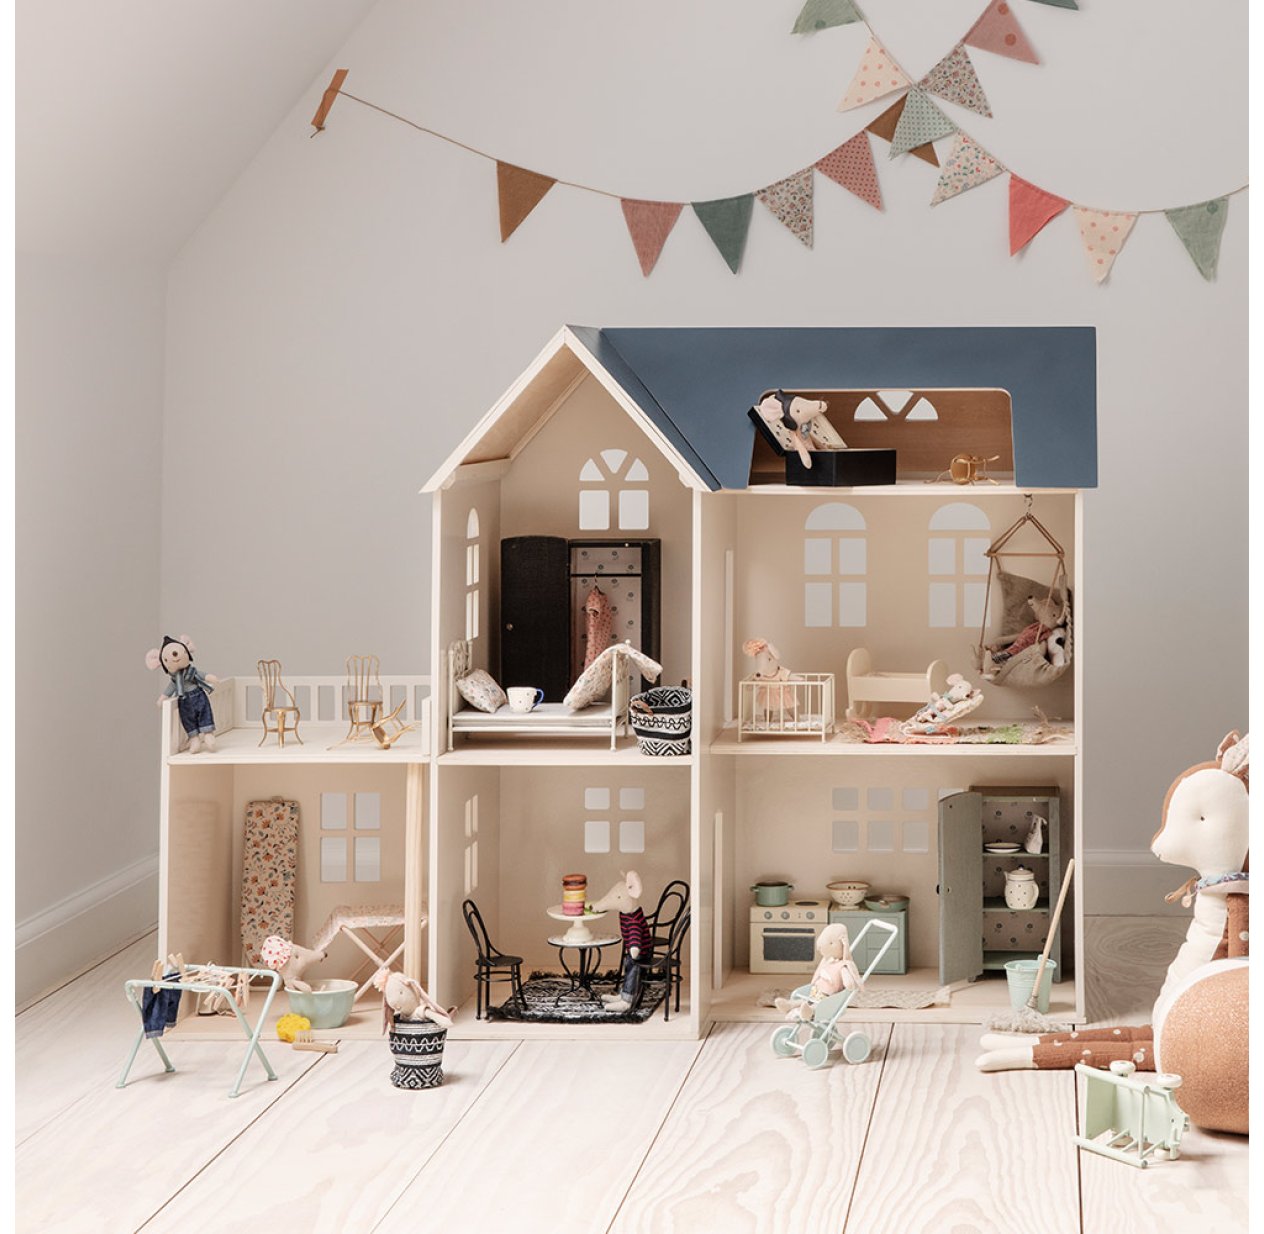 Maison de Poupée Miniature Maileg pour chambre enfant - Les Enfants du  Design